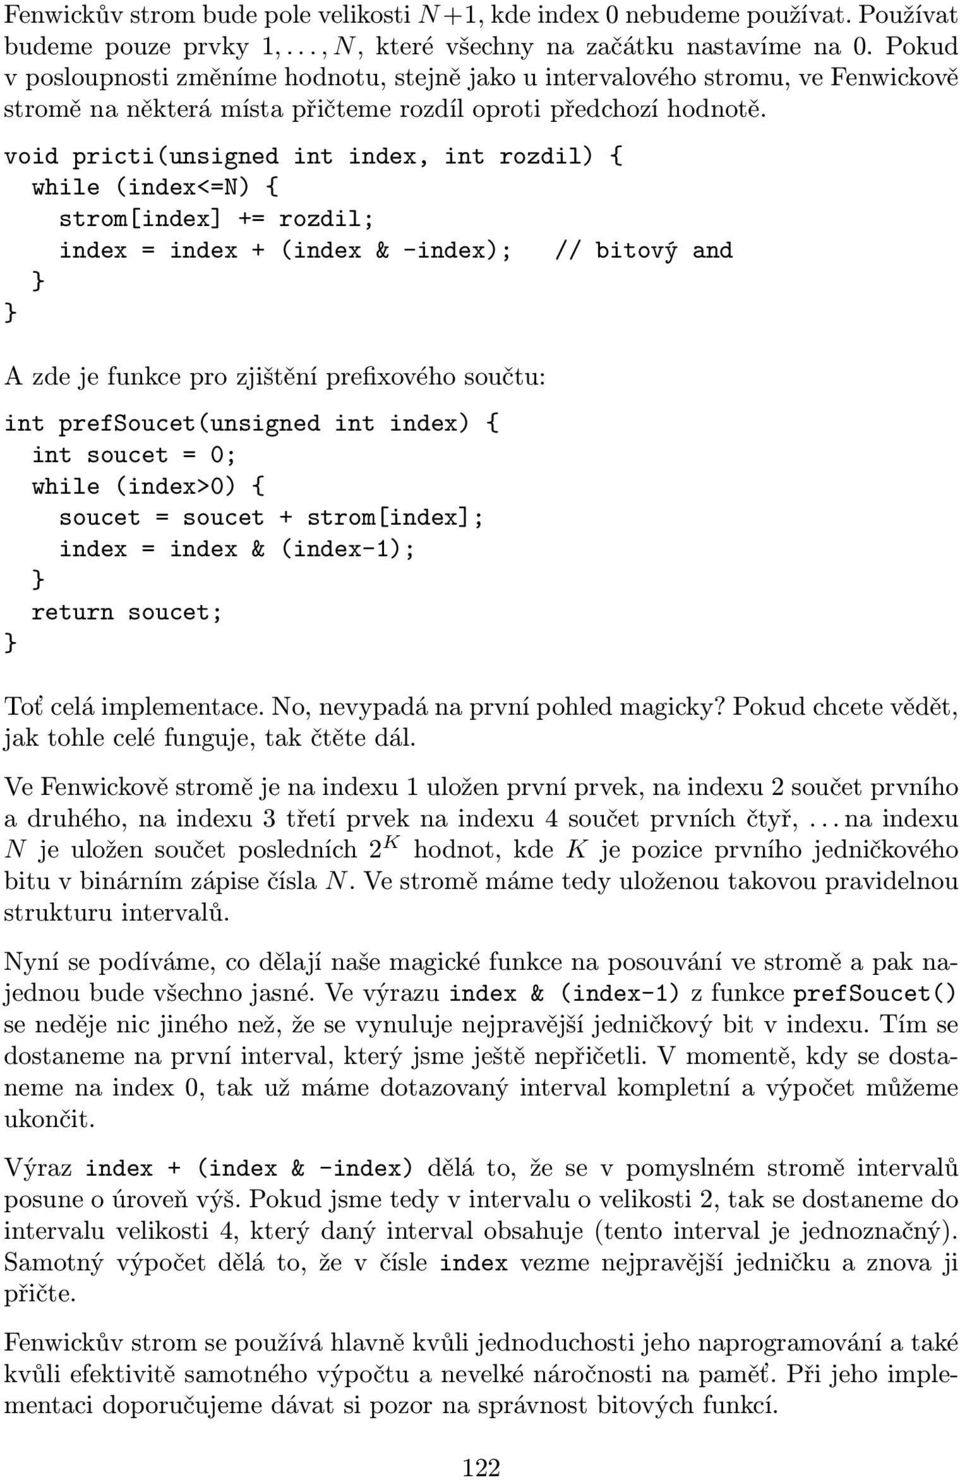 void pricti(unsigned int index, int rozdil) { while (index<=n) { strom[index] += rozdil; index = index + (index & -index); // bitový and A zde je funkce pro zjištění prefixového součtu: int